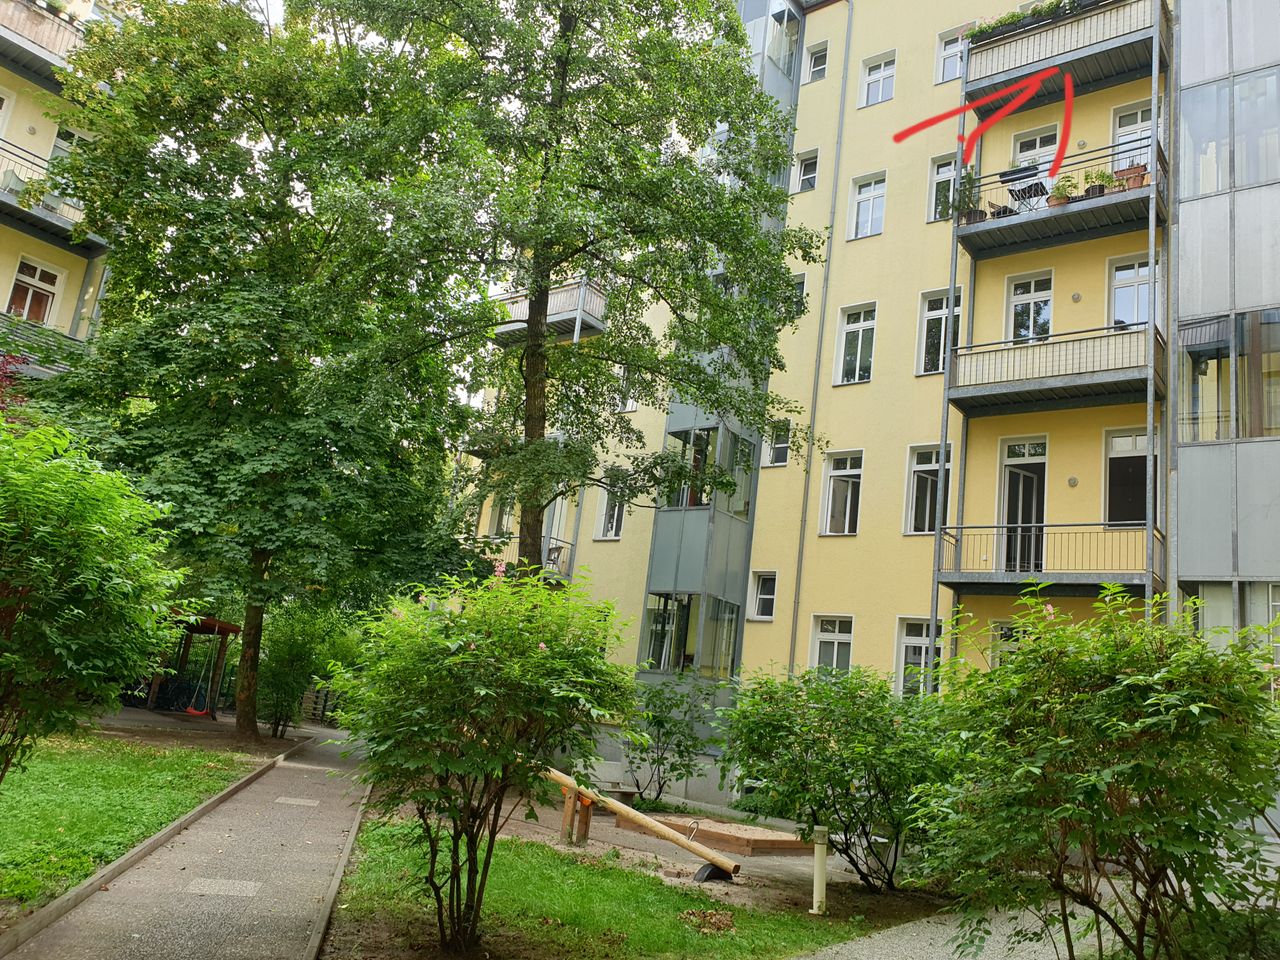 3 Zimmer Dachgeschoss Maisonette Wohnung in Berlin Mitte